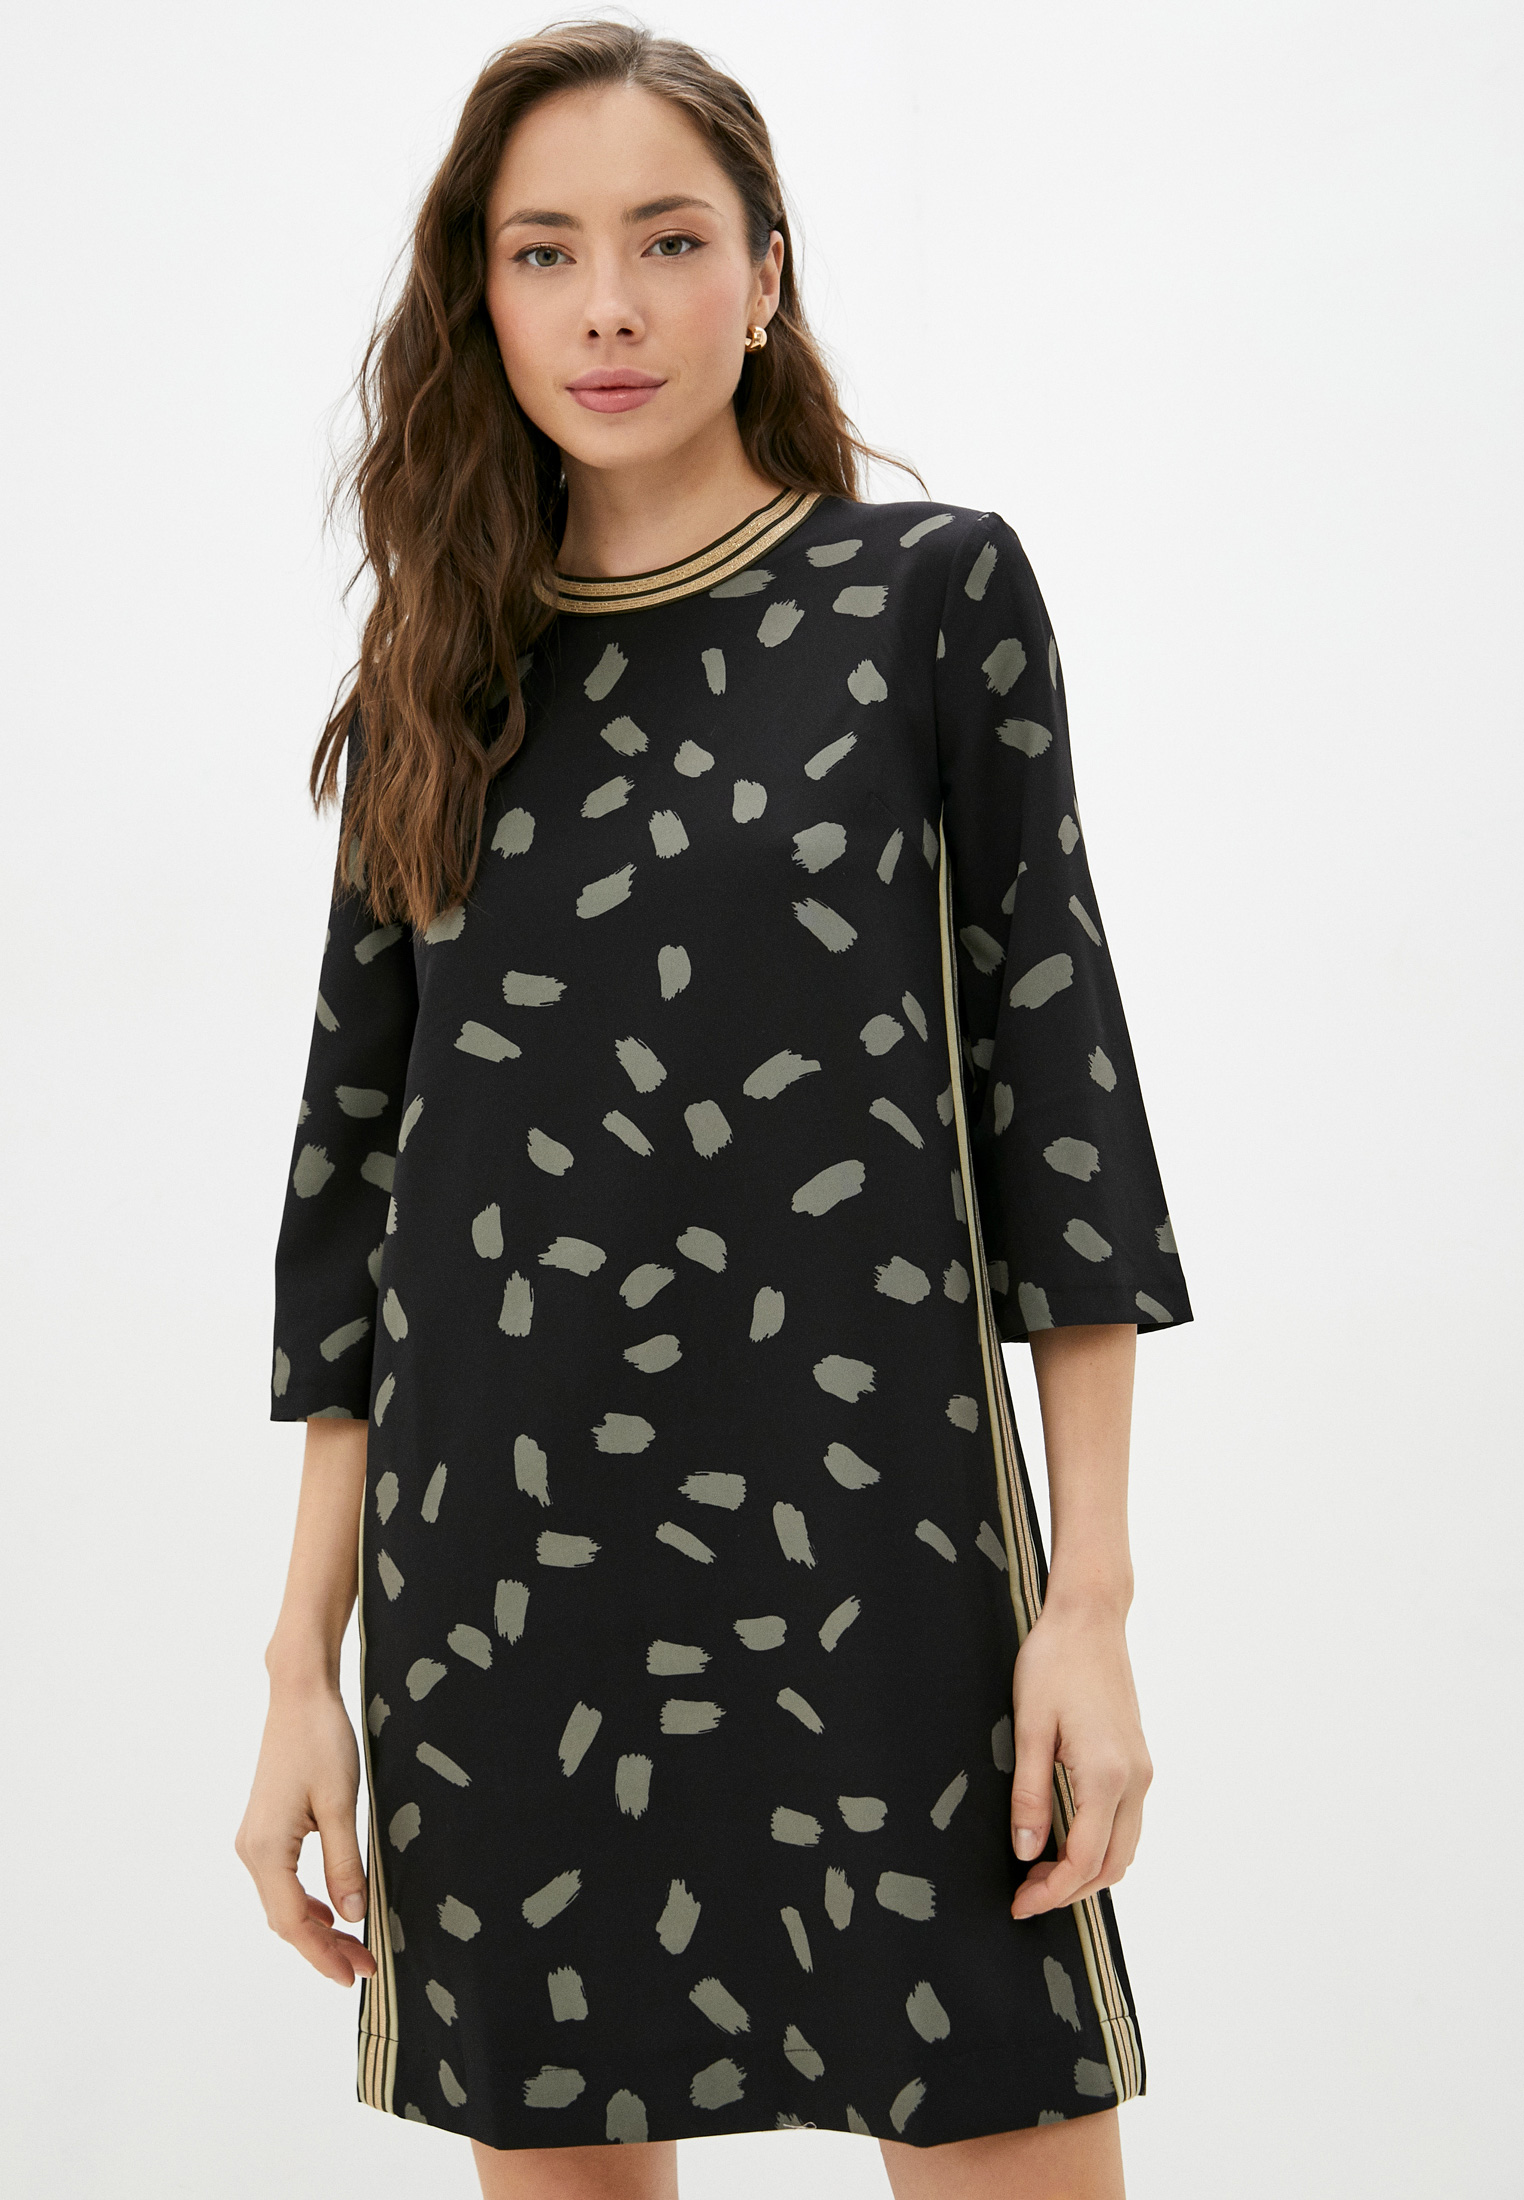 Платье Woman eGo, цвет: черный, MP002XW08JS1 — купить в интернет-магазине Lamoda